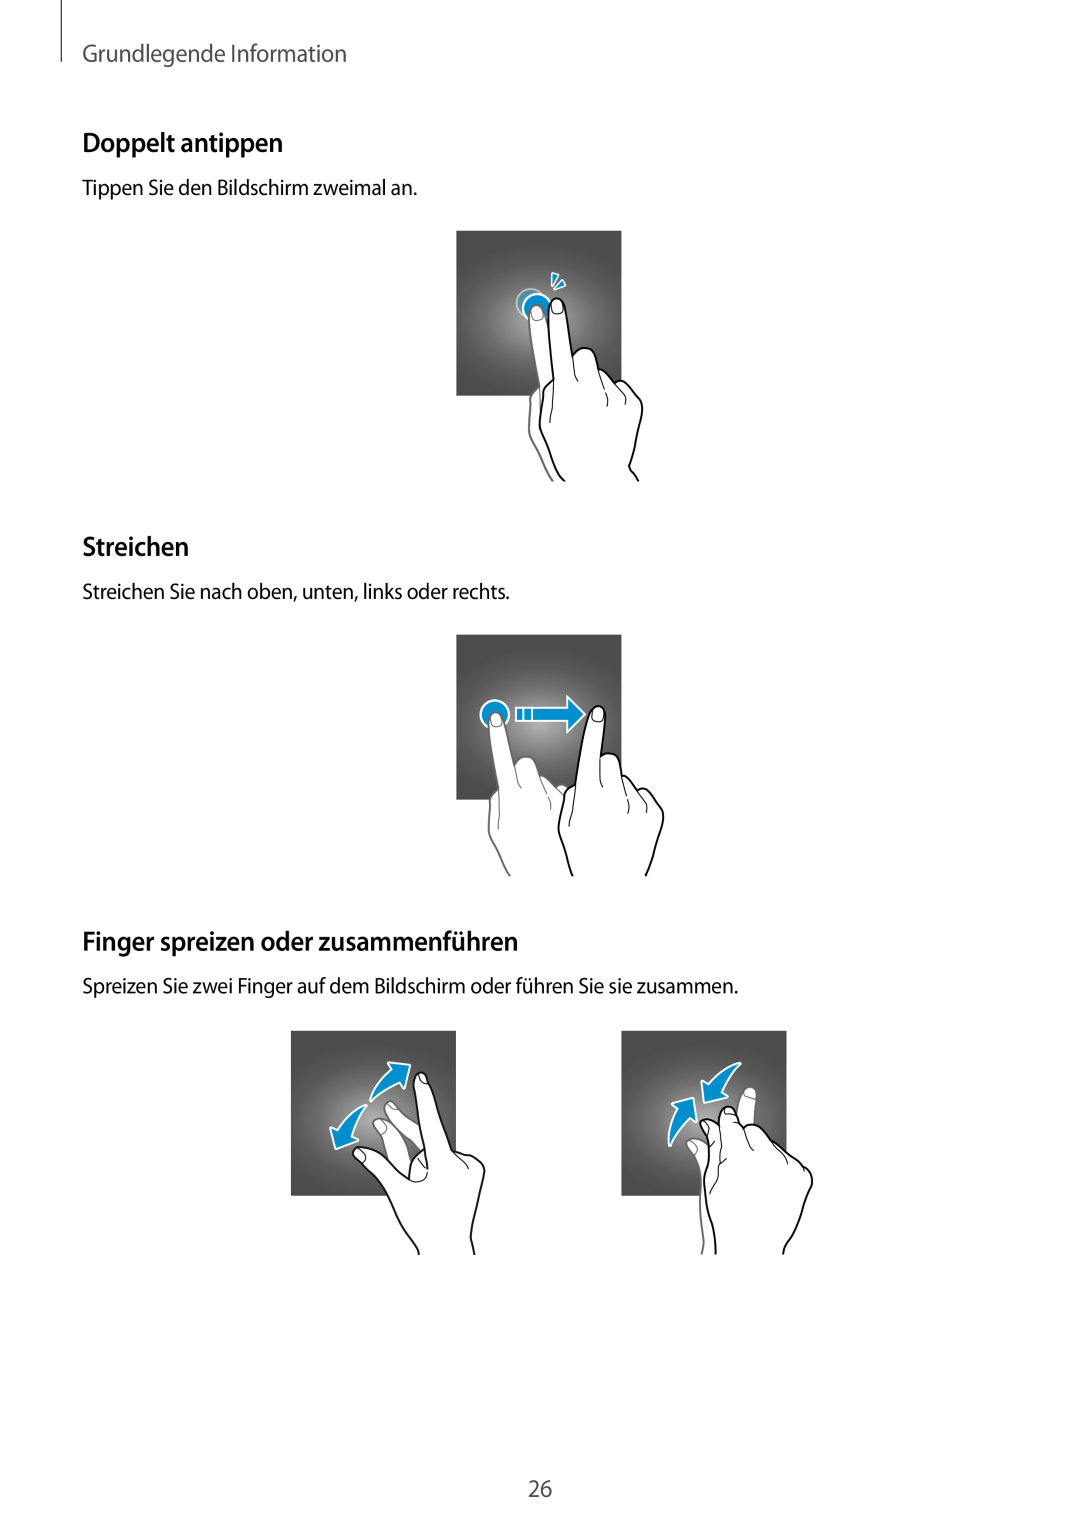 Samsung SM-T555NZKADDE manual Doppelt antippen, Streichen, Finger spreizen oder zusammenführen, Grundlegende Information 